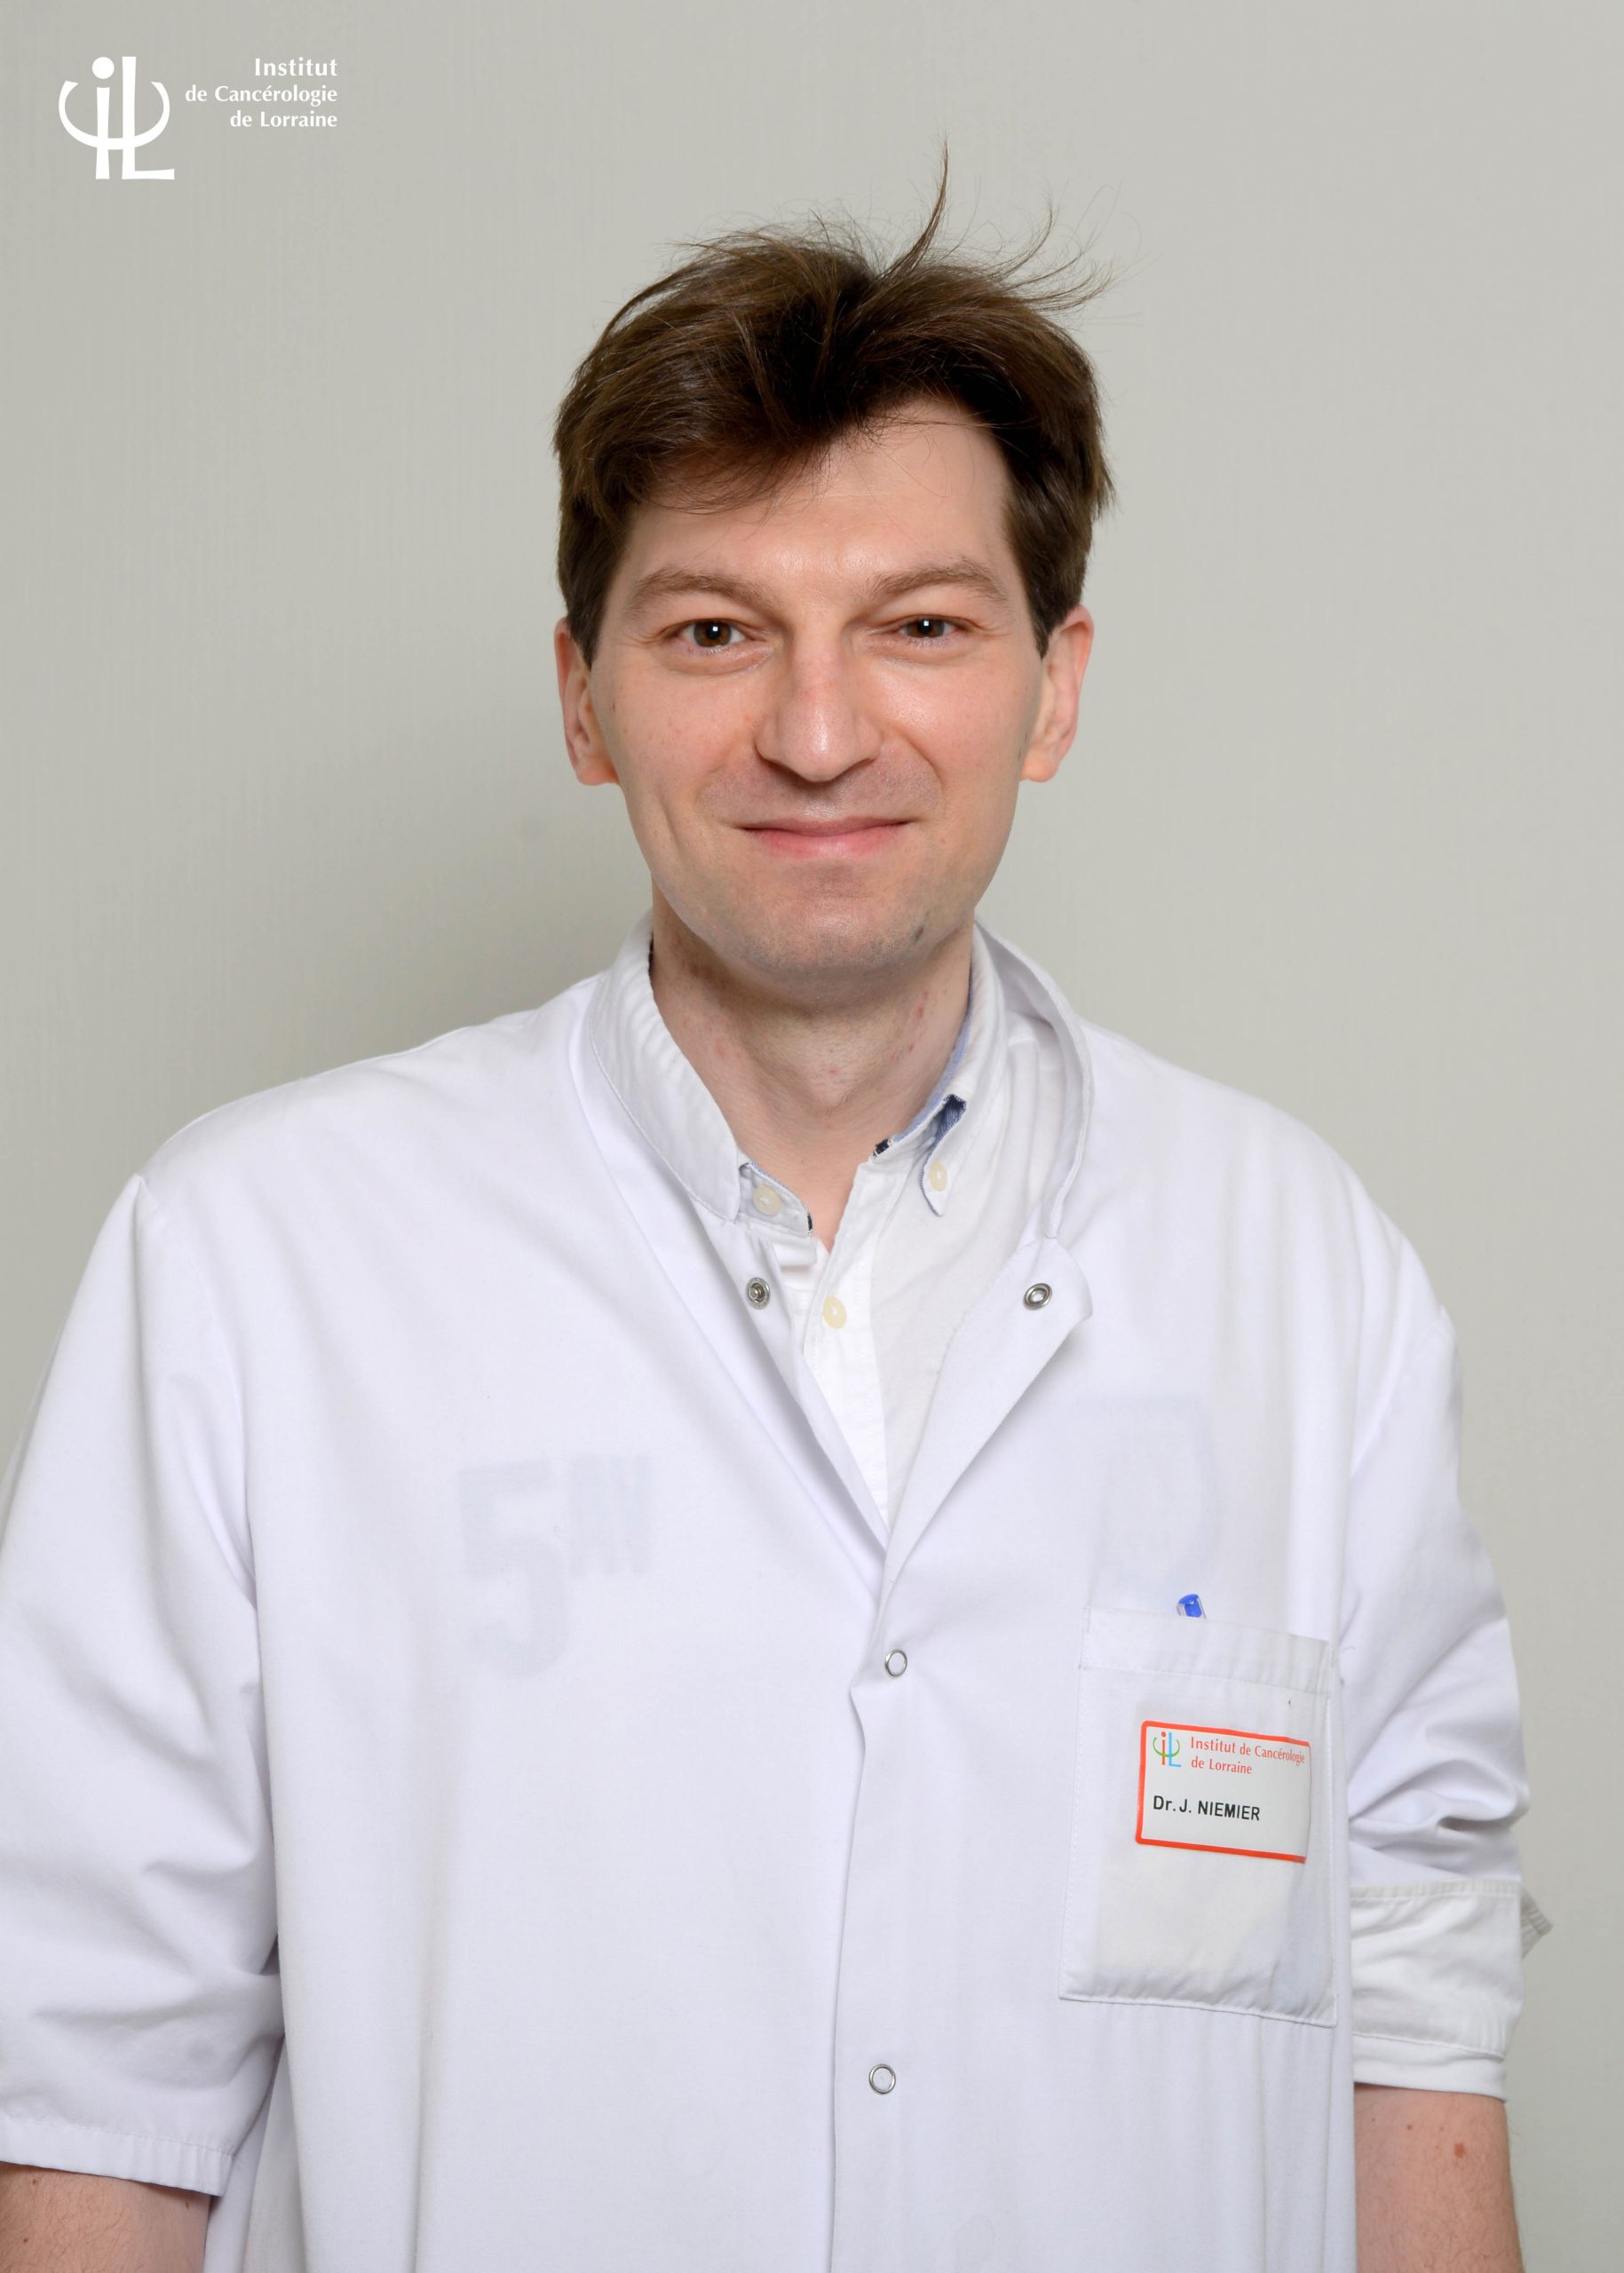 Dr NIEMIER Jean-Yves